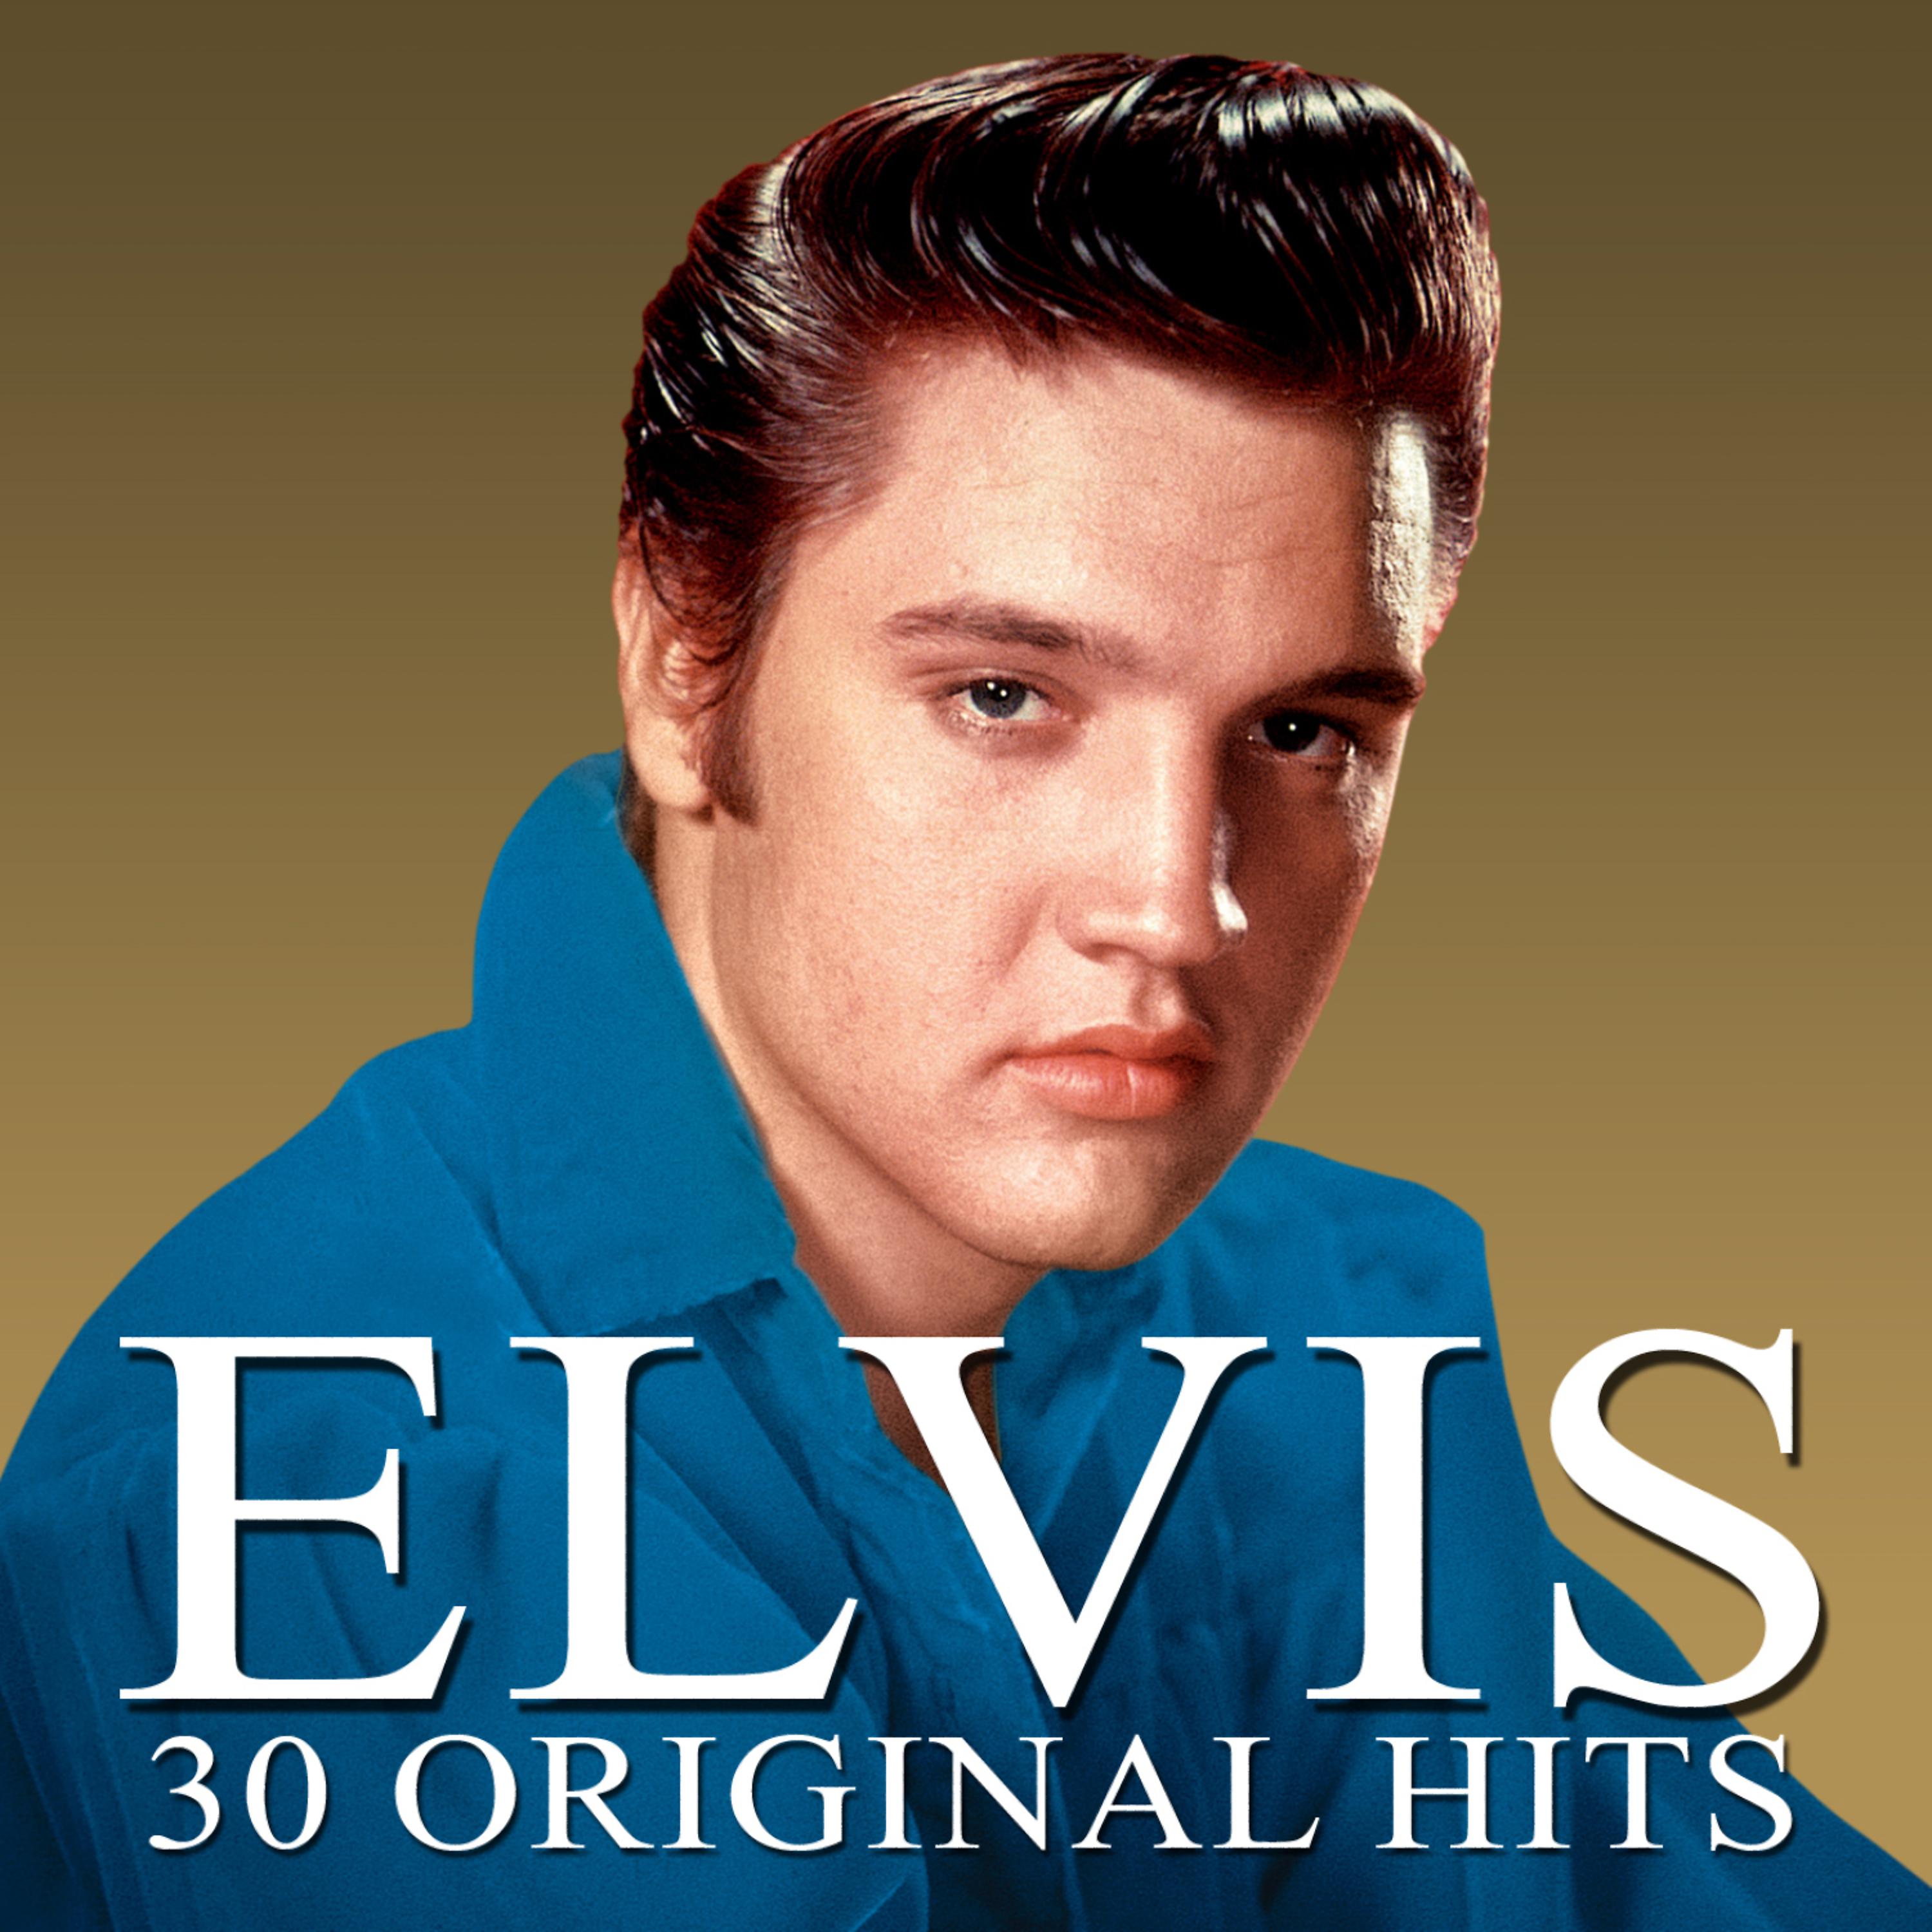 Альбом 30 Original Hits исполнителя Elvis Presley